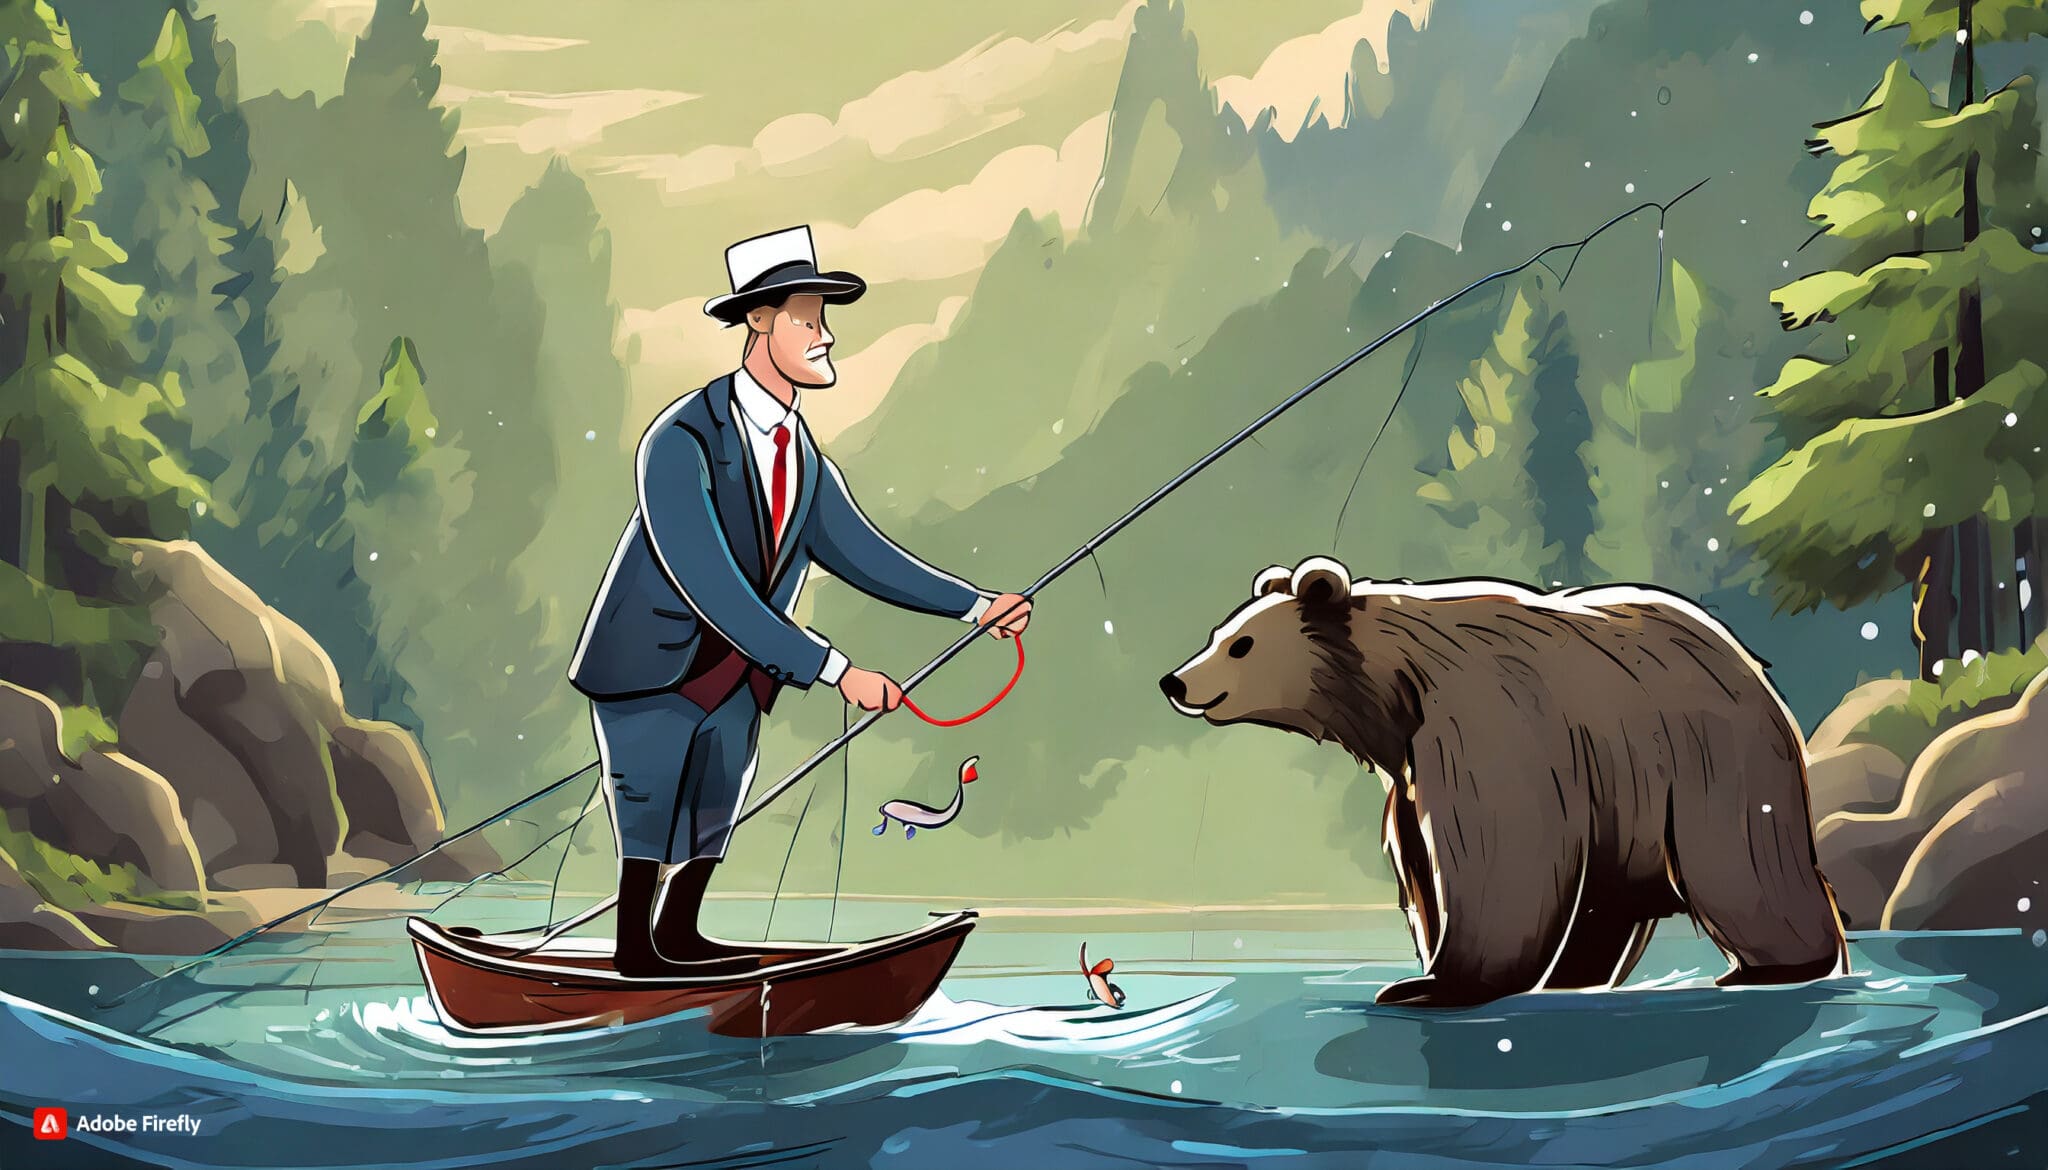 Makler giełdowy łowi niedźwiedzie przy strumyku